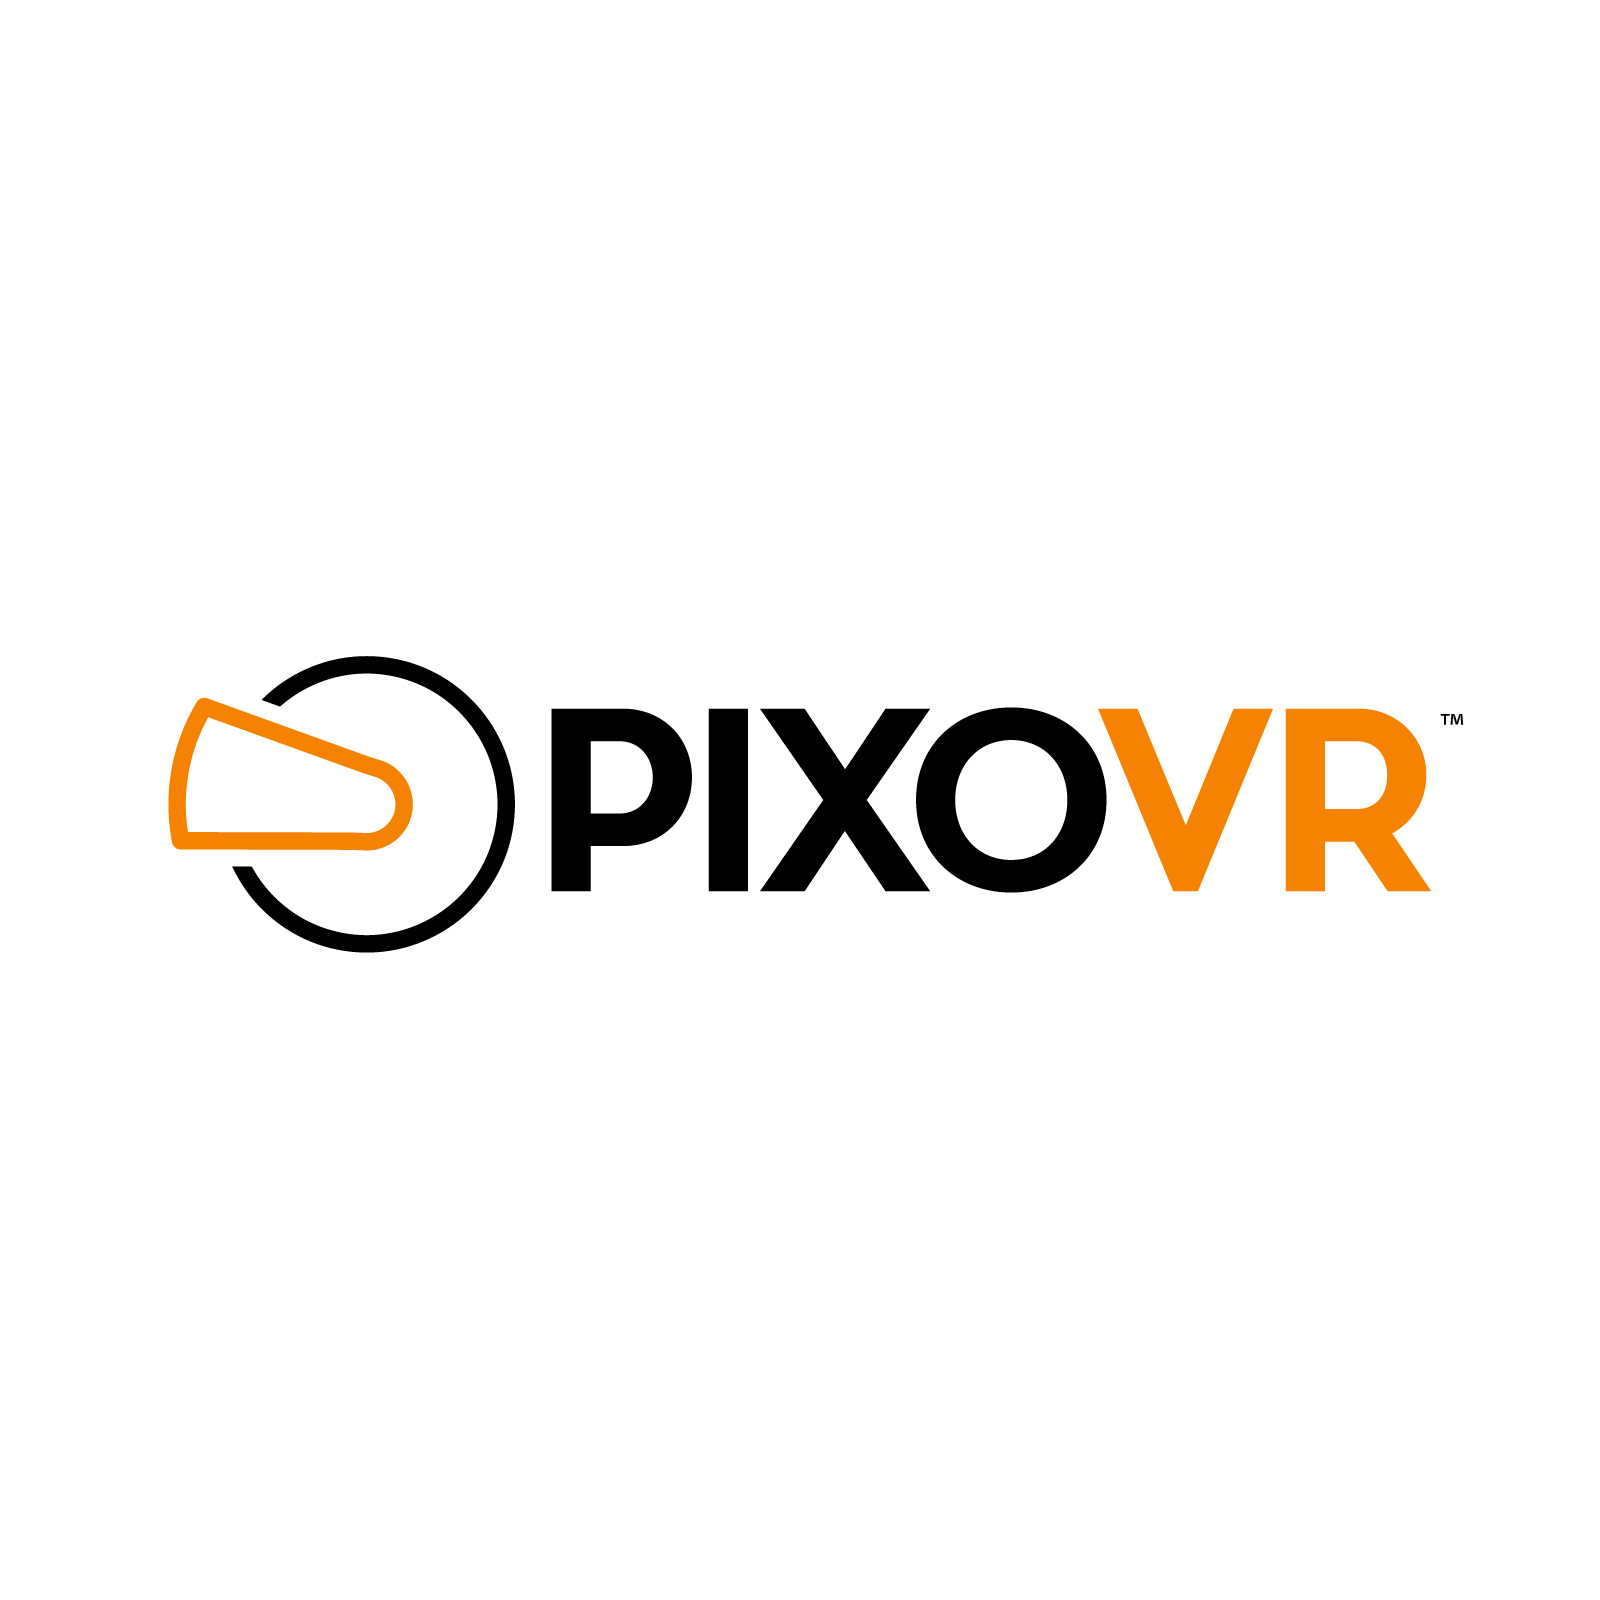 PIXO VR Premiers Vir